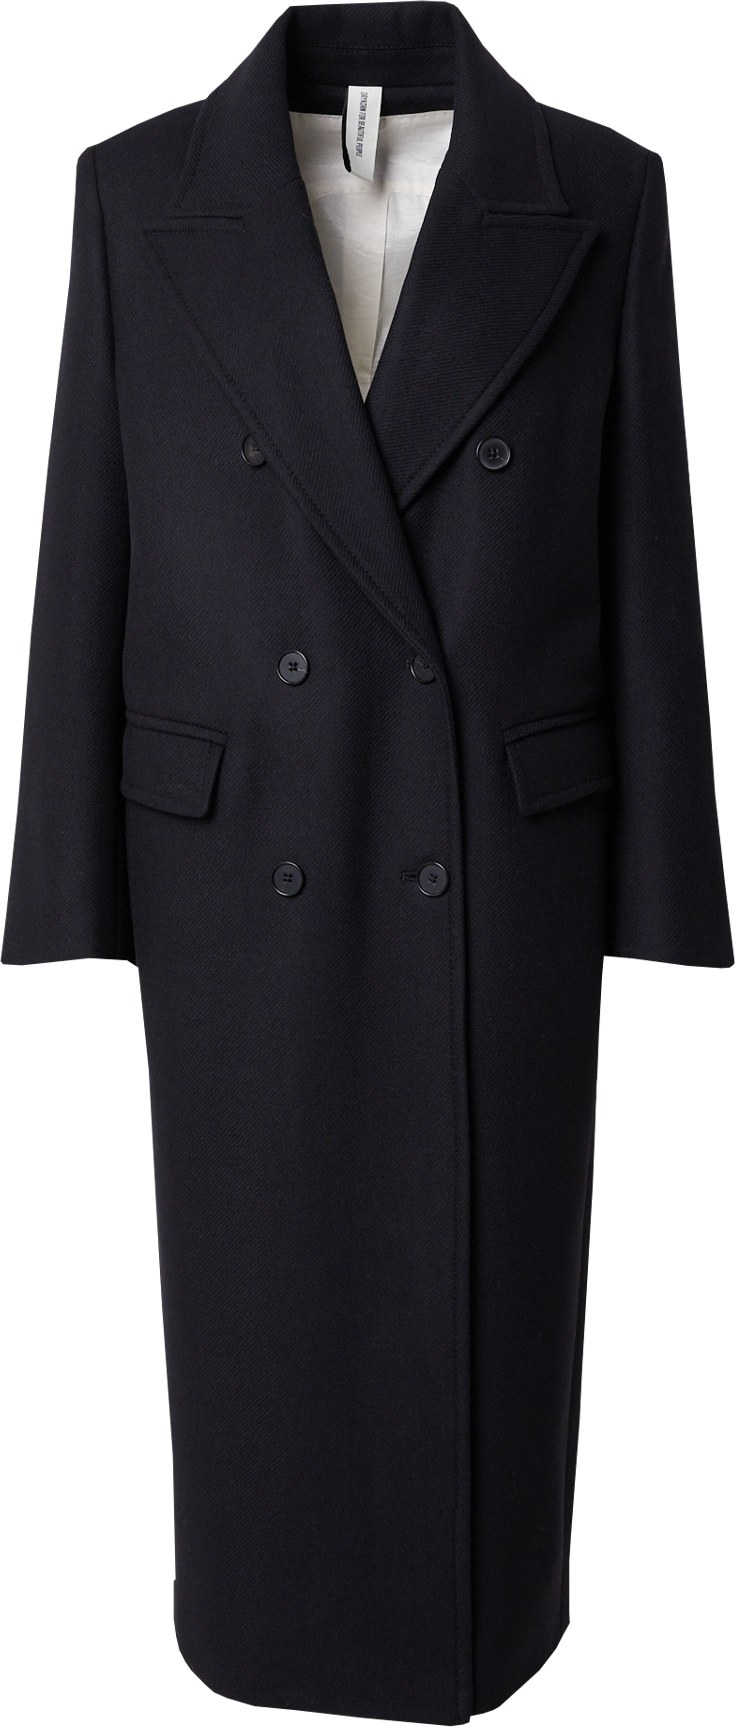 Přechodný kabát 'Worcester' drykorn černá